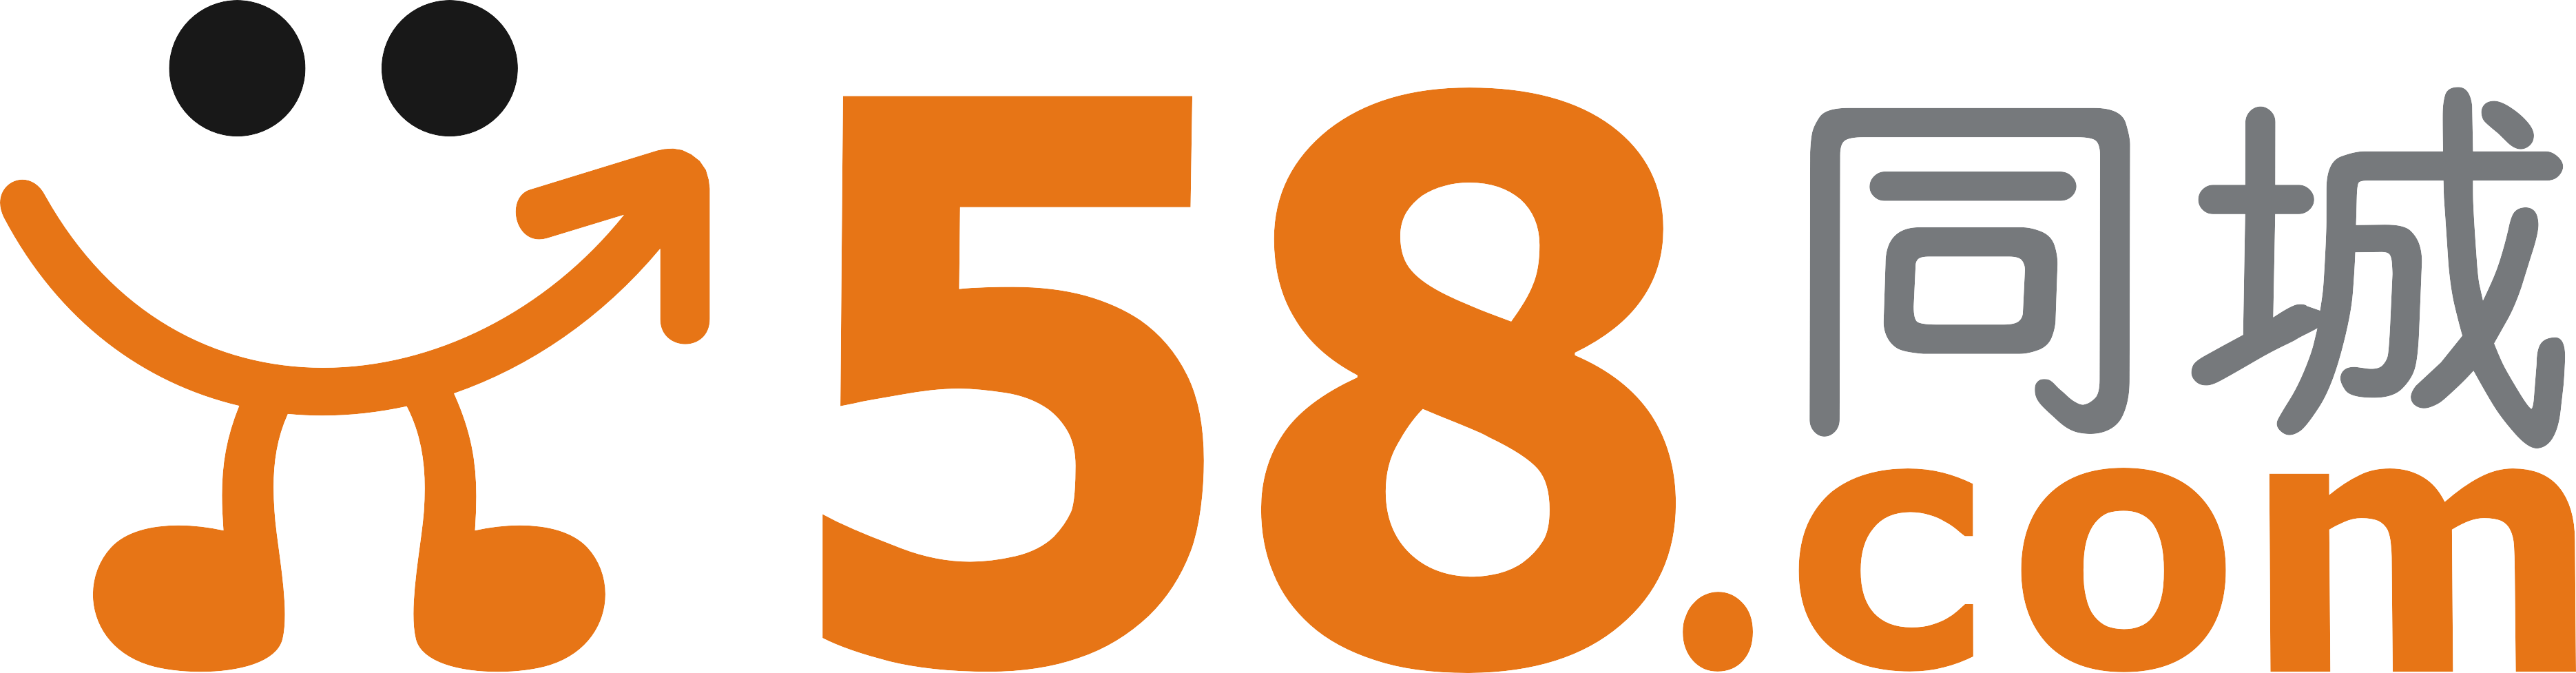 58.com Logo - Why 58.com Inc. (ADR) Shares Popped Today - The Motley Fool